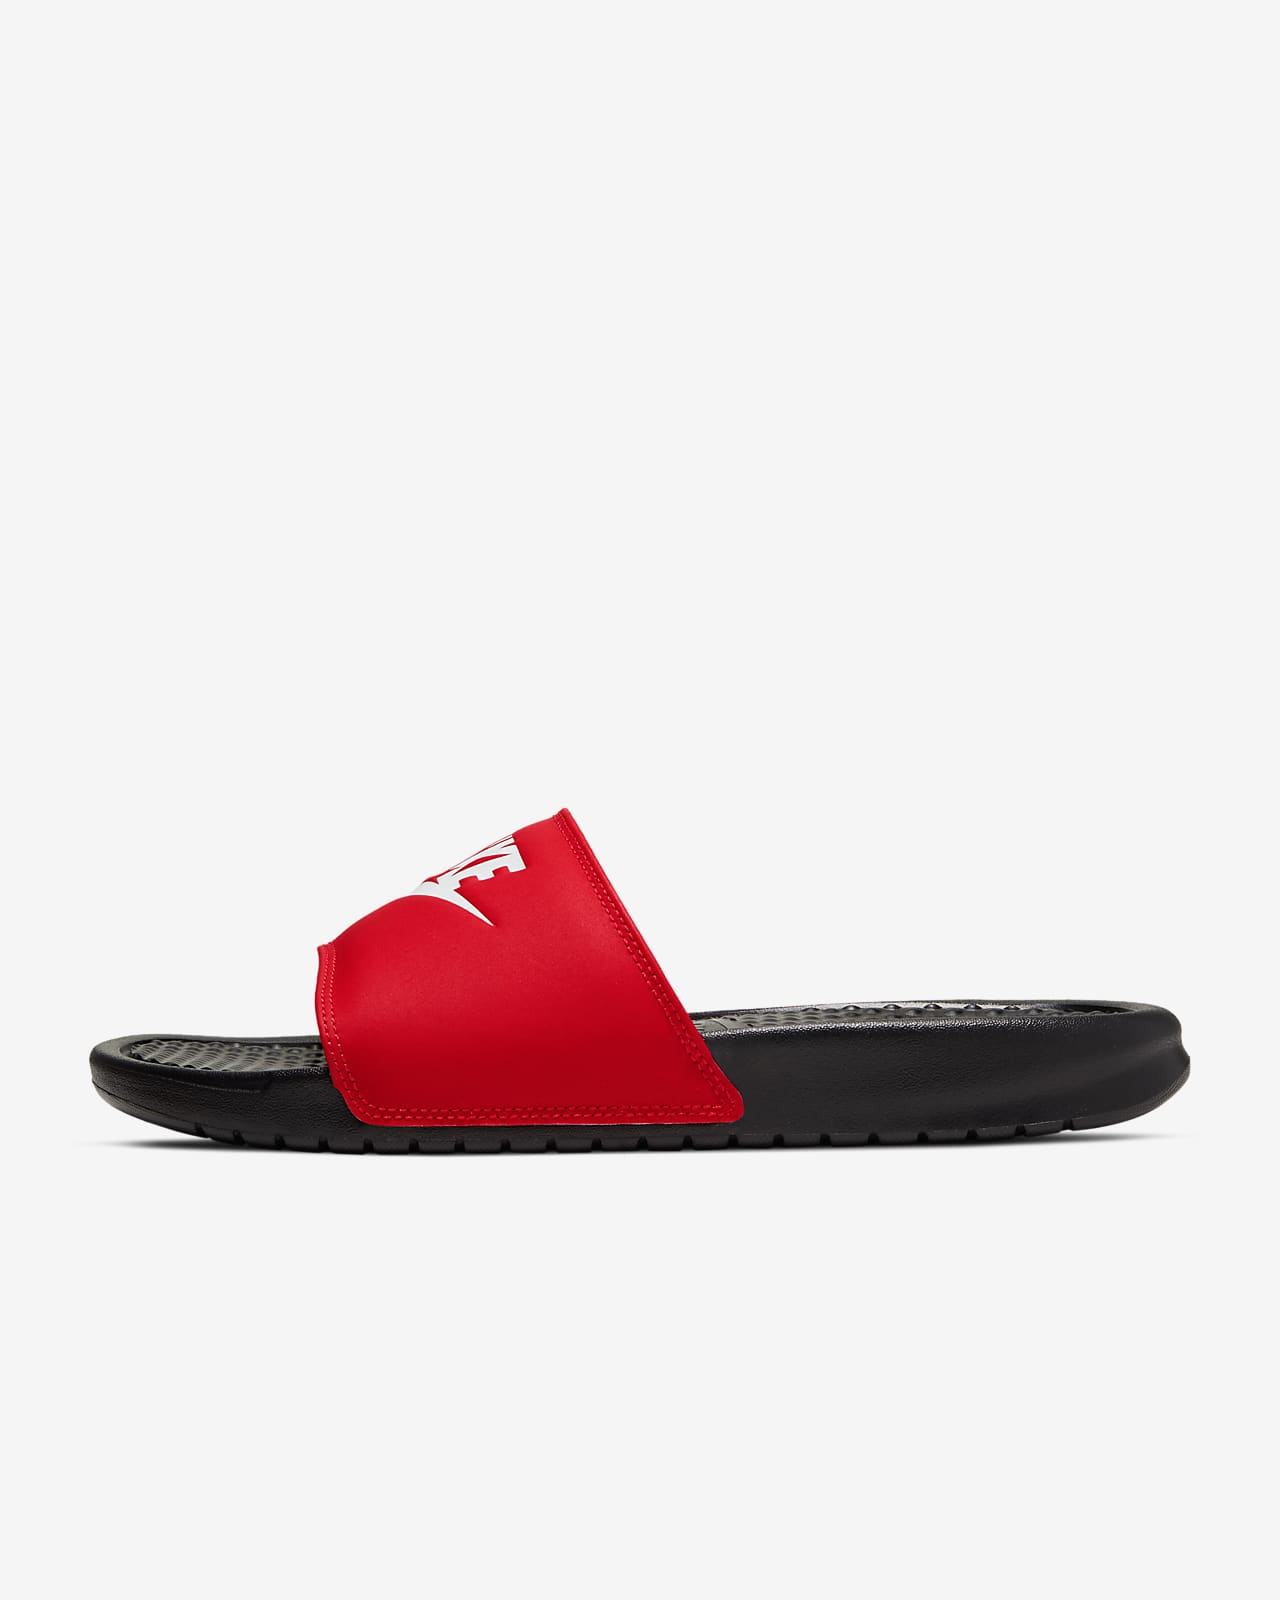 Buy > nike benassi jdi print men's slide sandals > in stock